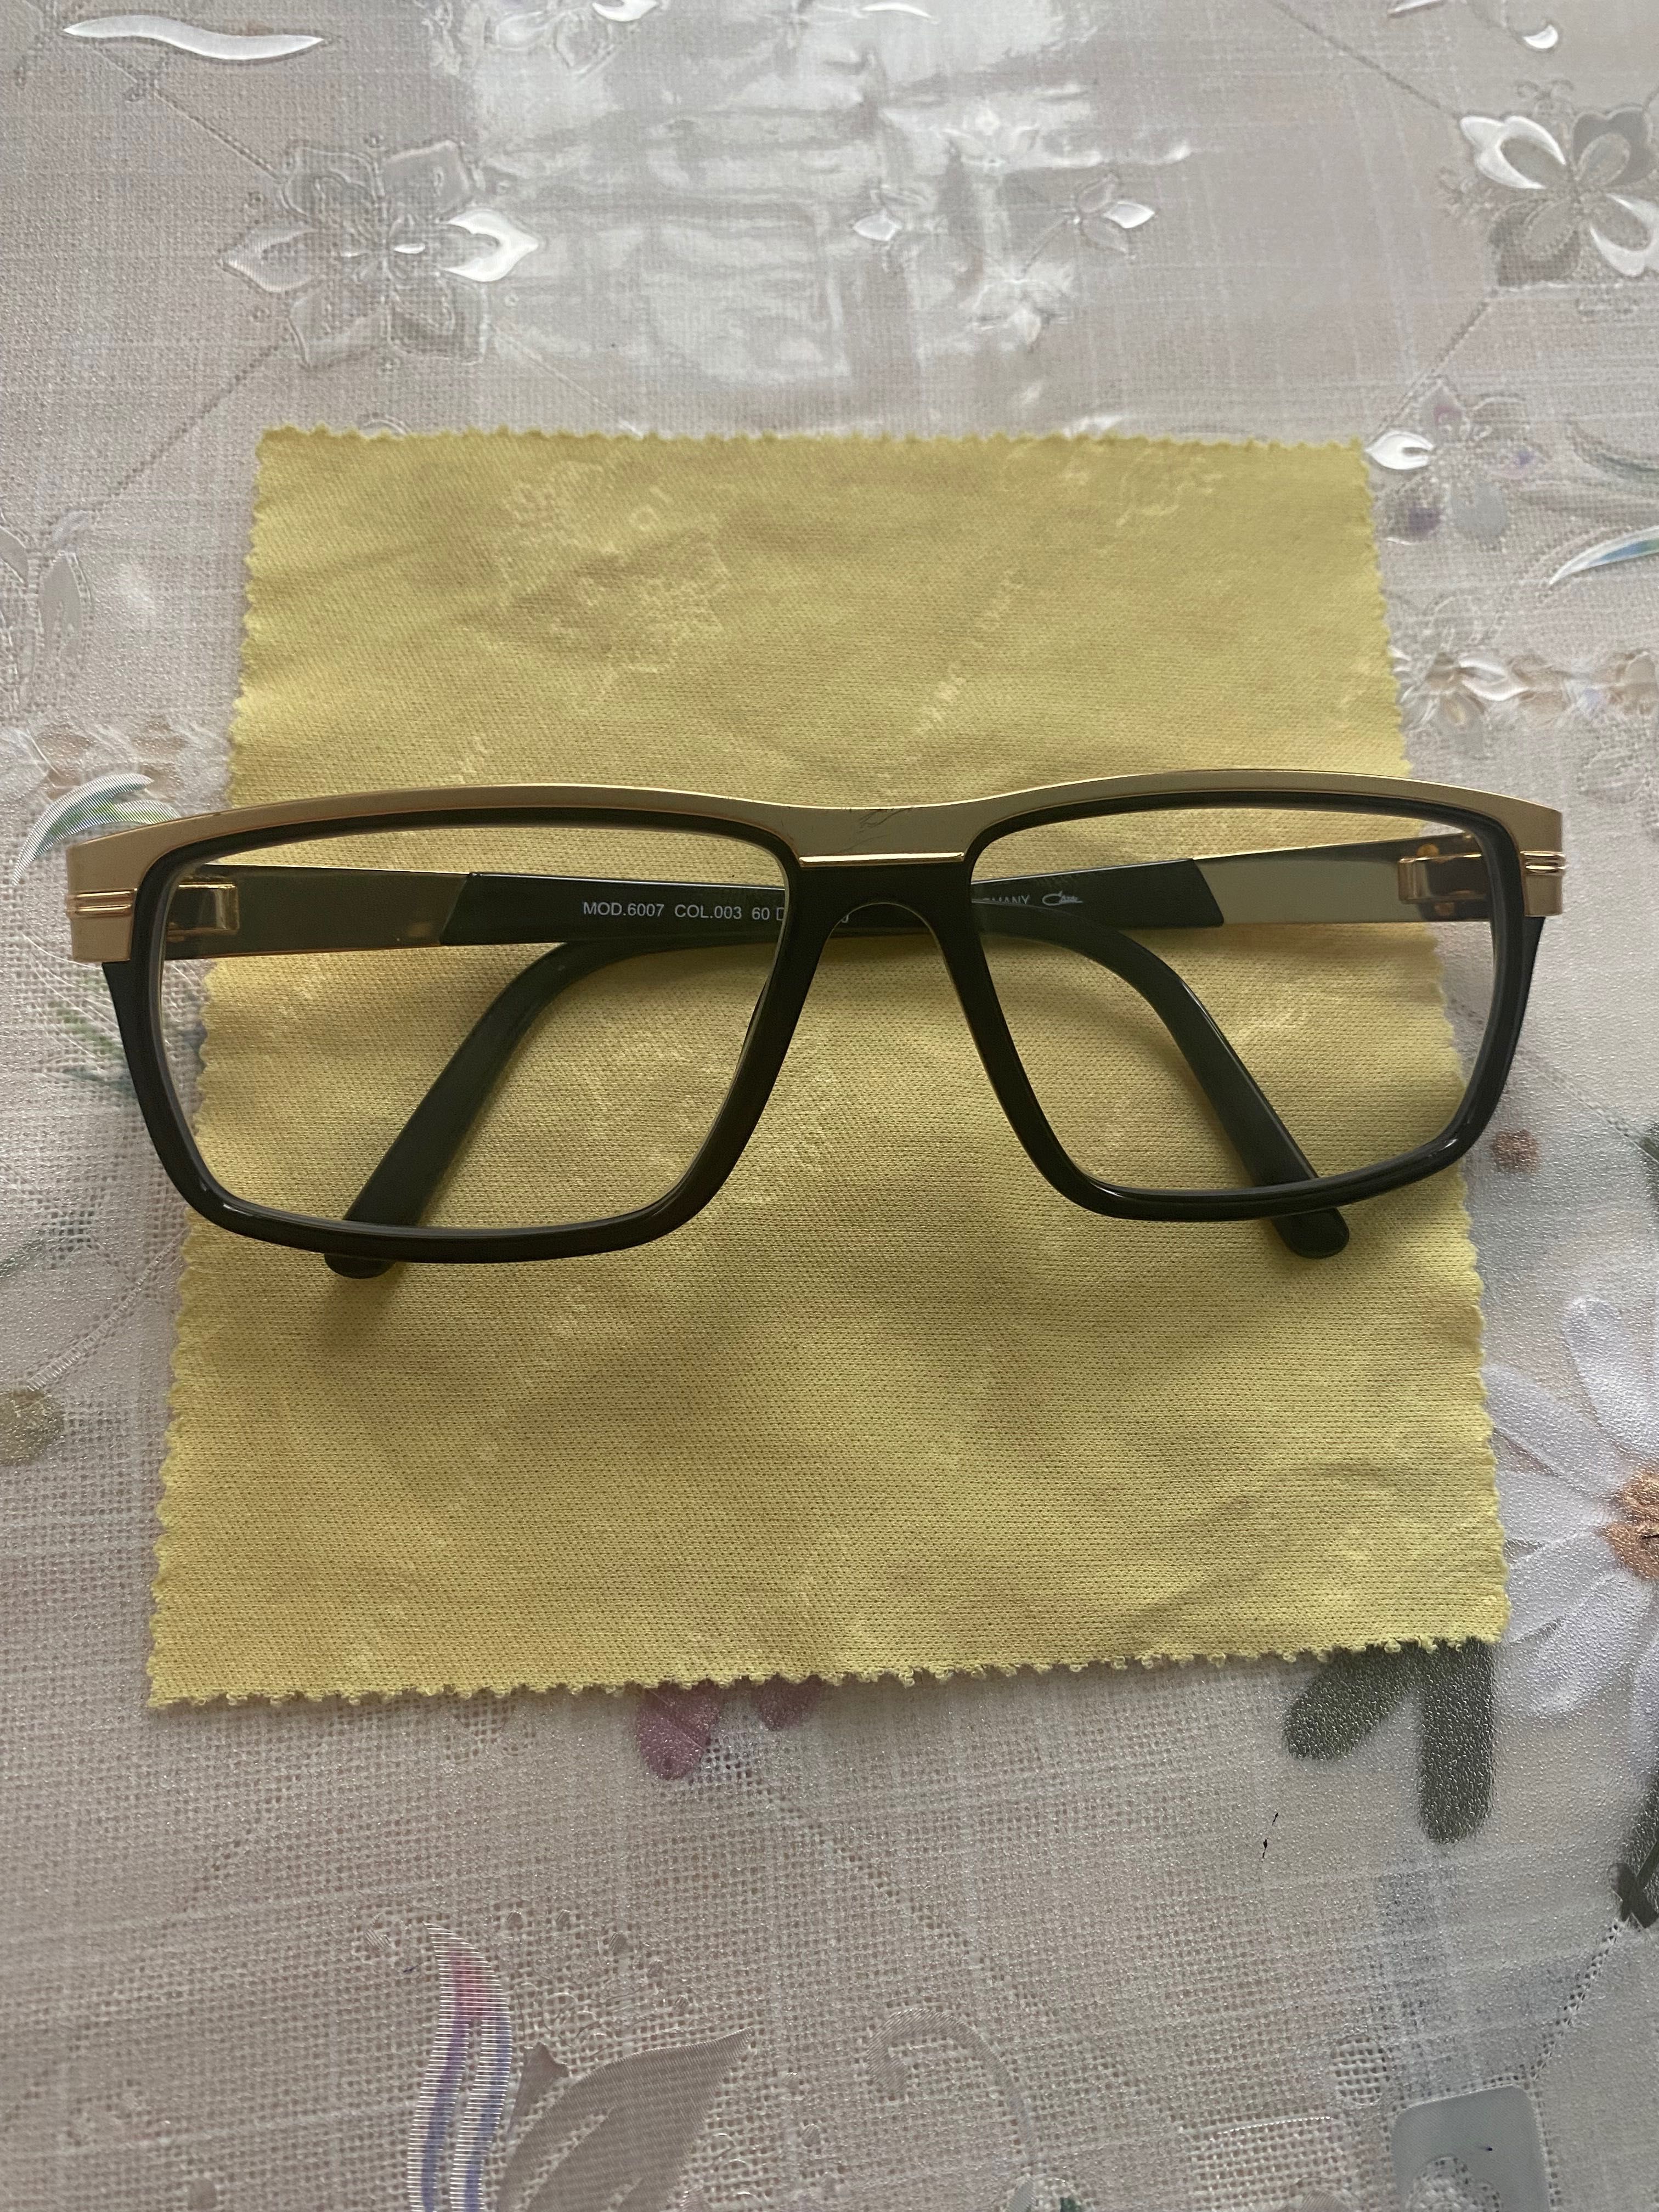 Оригинальные имиджевые очки Cazal - Titanuim frame , made in Germany